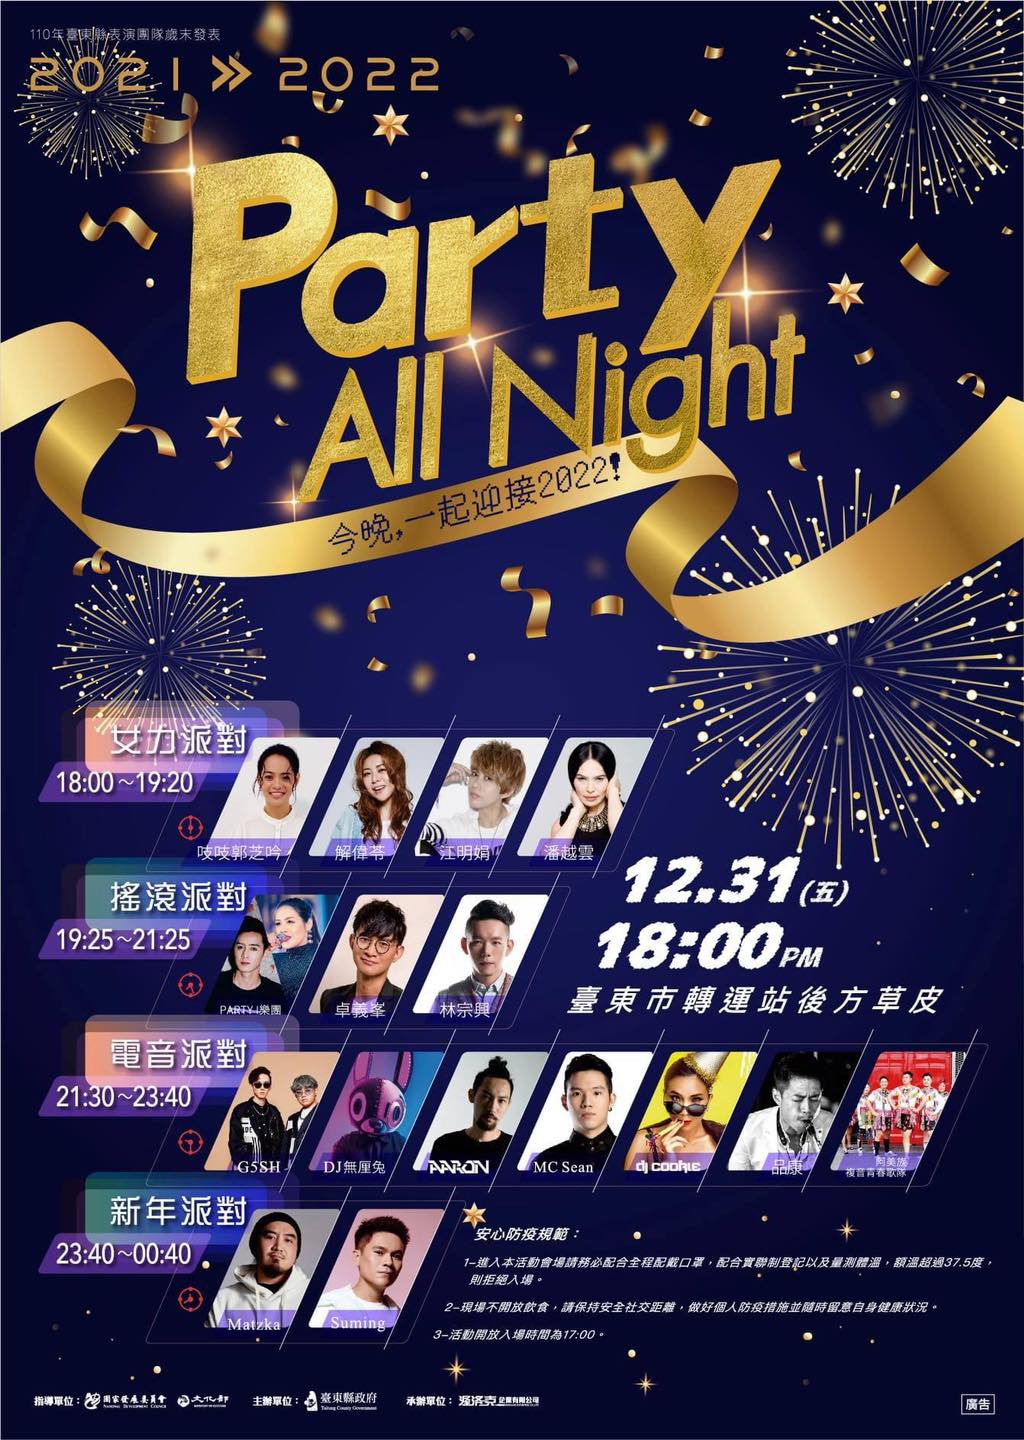 【活動】臺東跨年派對Party All Night